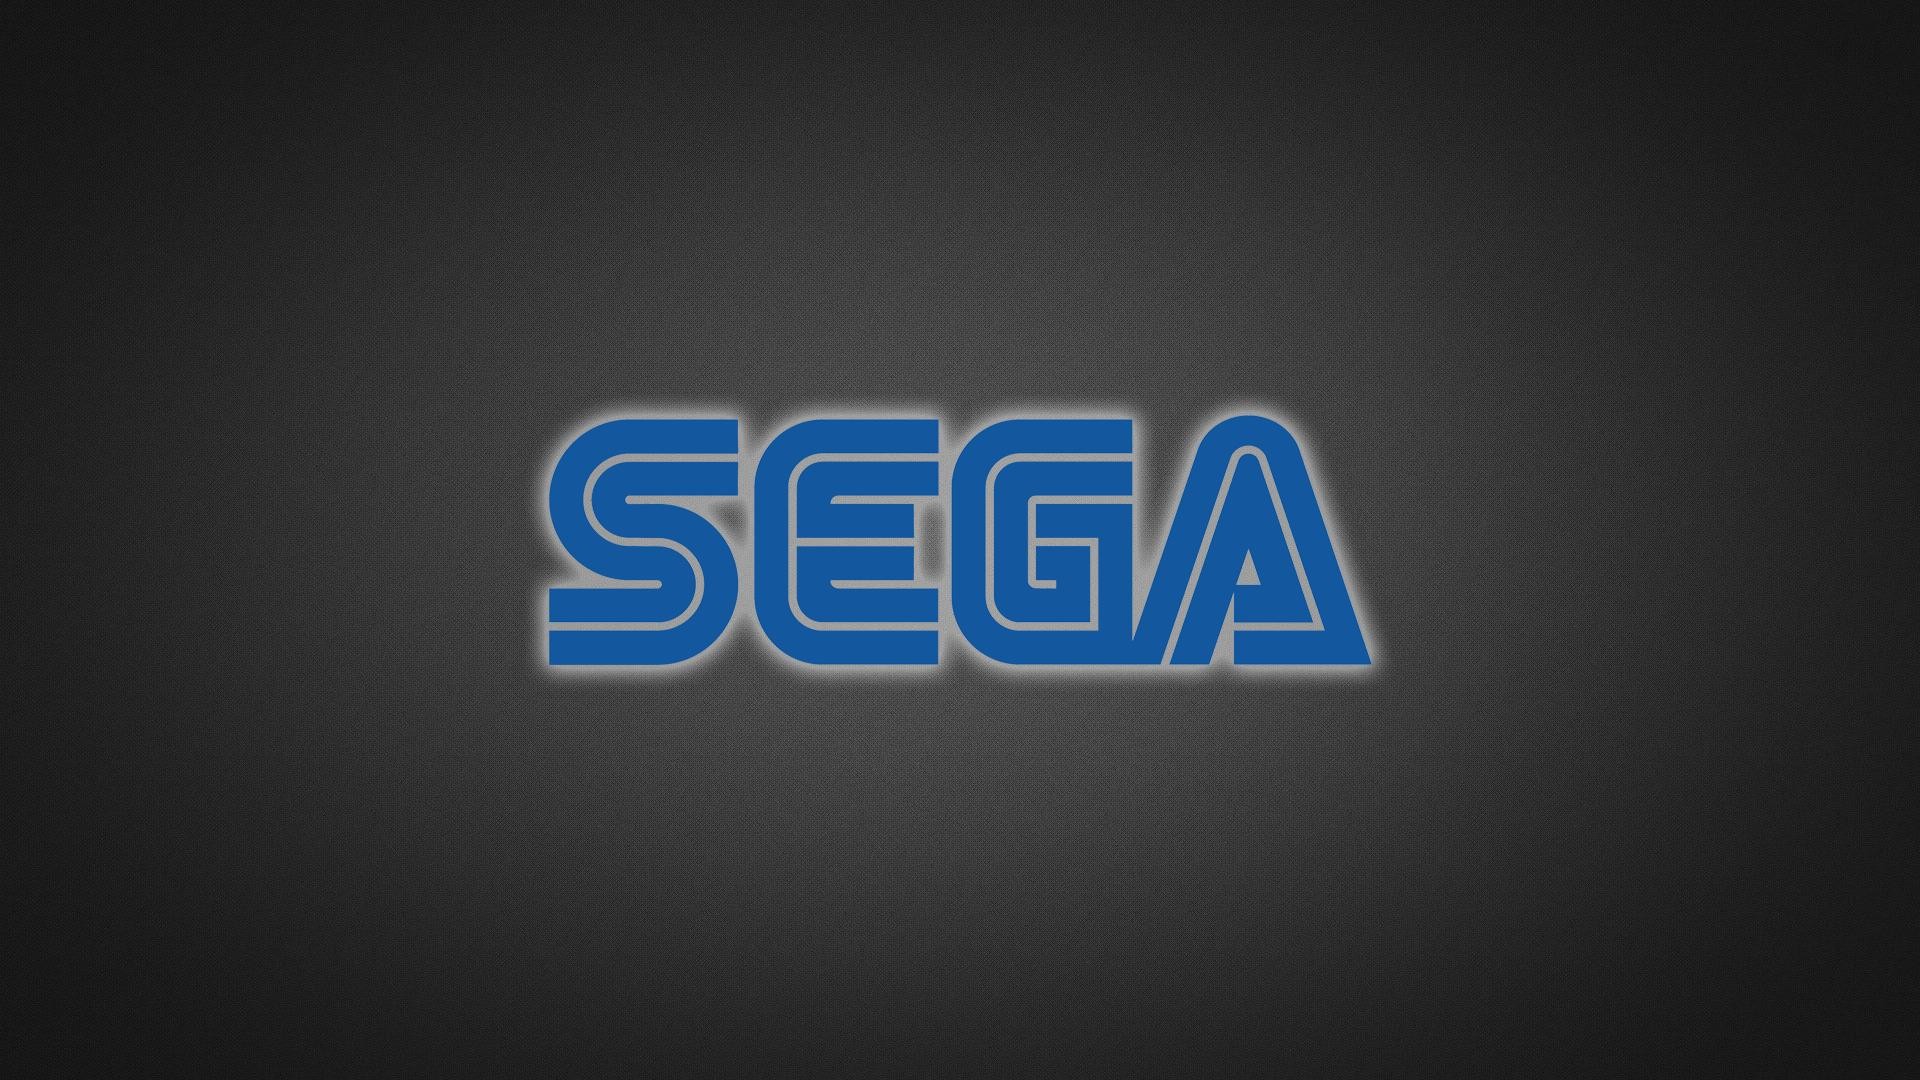 1920x1080 Fonds d'Ã©cran Sega : tous les wallpapers Sega